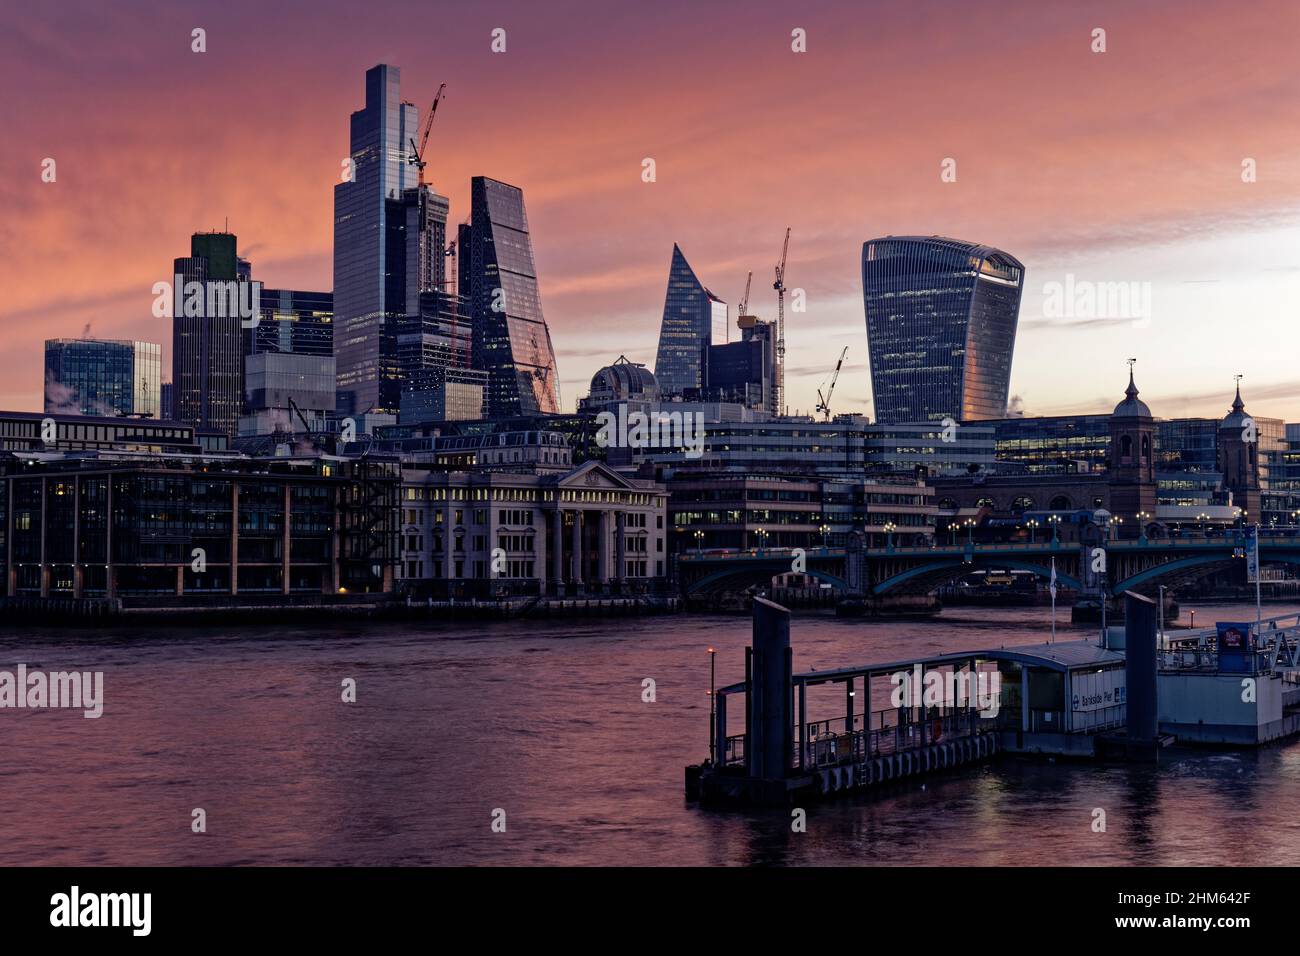 Der zentrale Bereich des Londoner Finanzviertels mit seinen verschiedenen Hochhäusern und Wolkenkratzern taucht bei Sonnenaufgang an einem kühlen Morgen aus der Dunkelheit auf Stockfoto